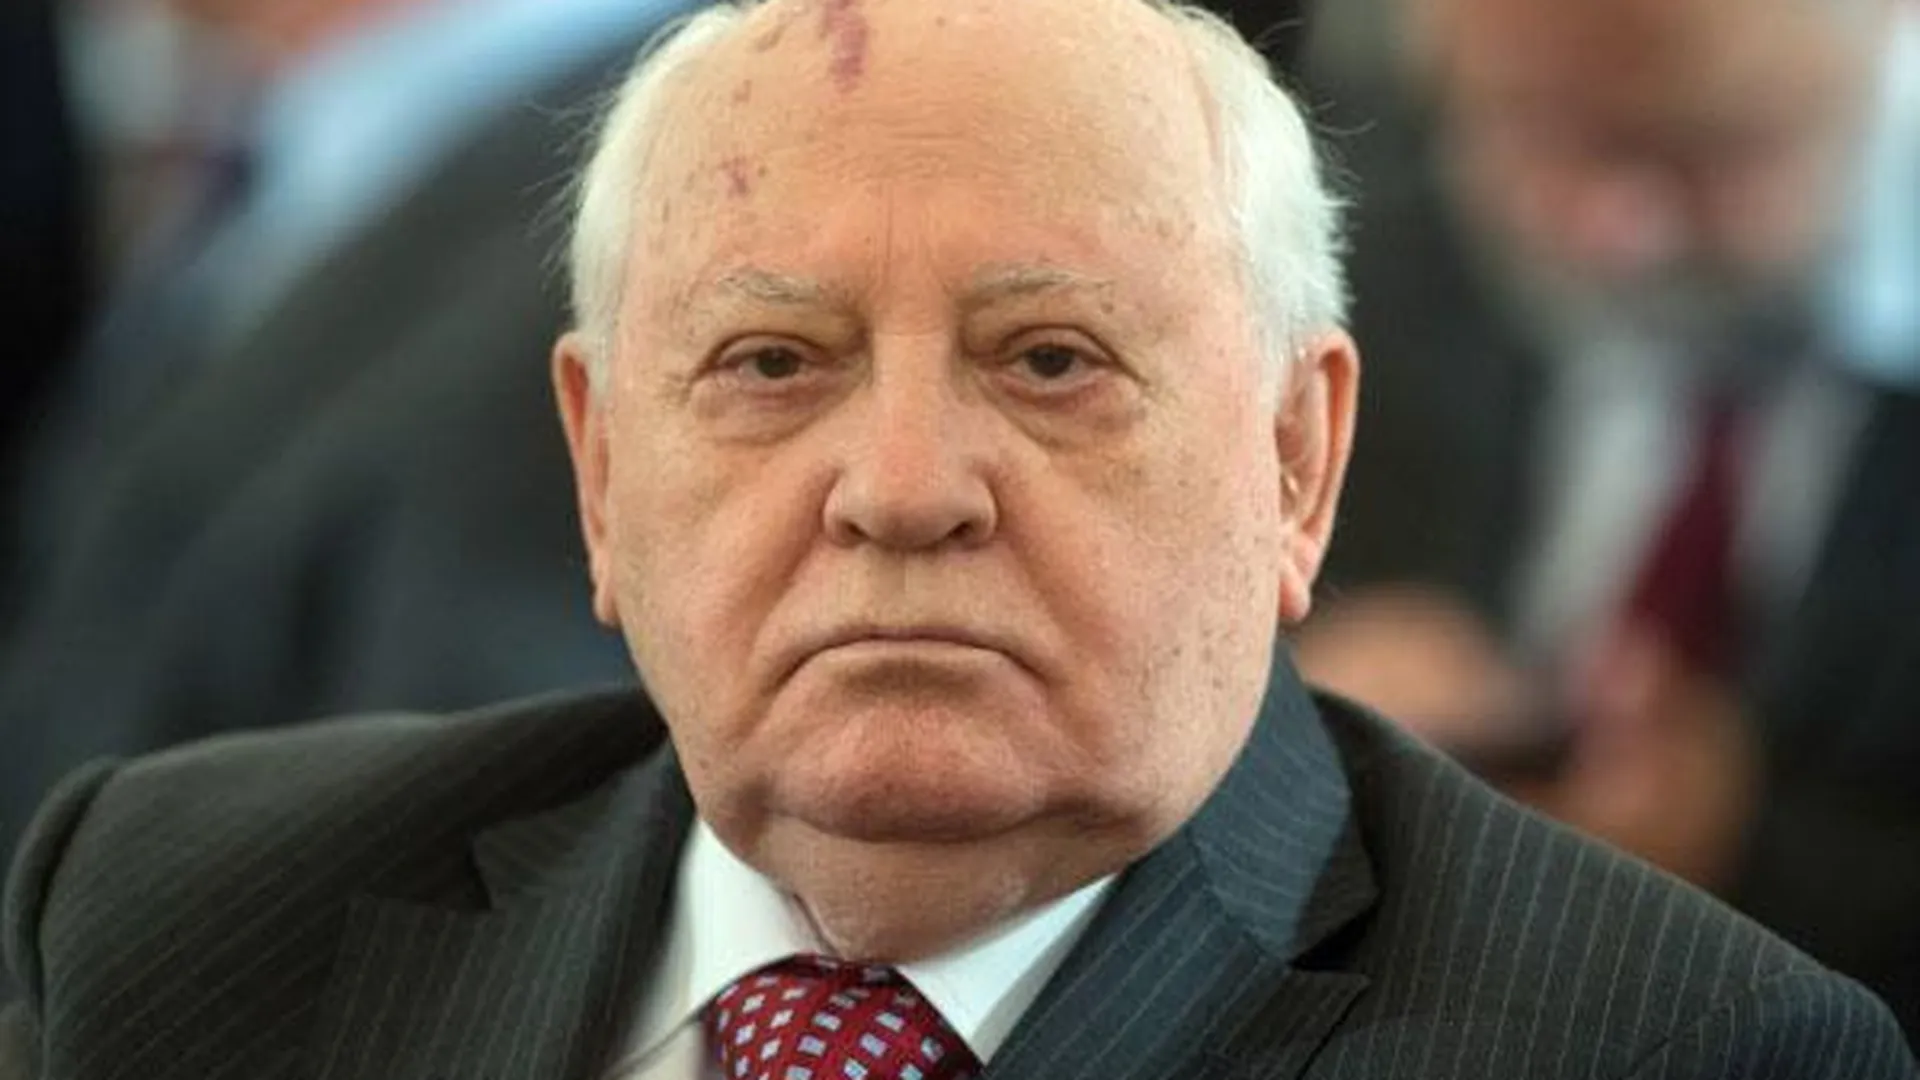 Горбачев: НАТО готовится к войне с Россией